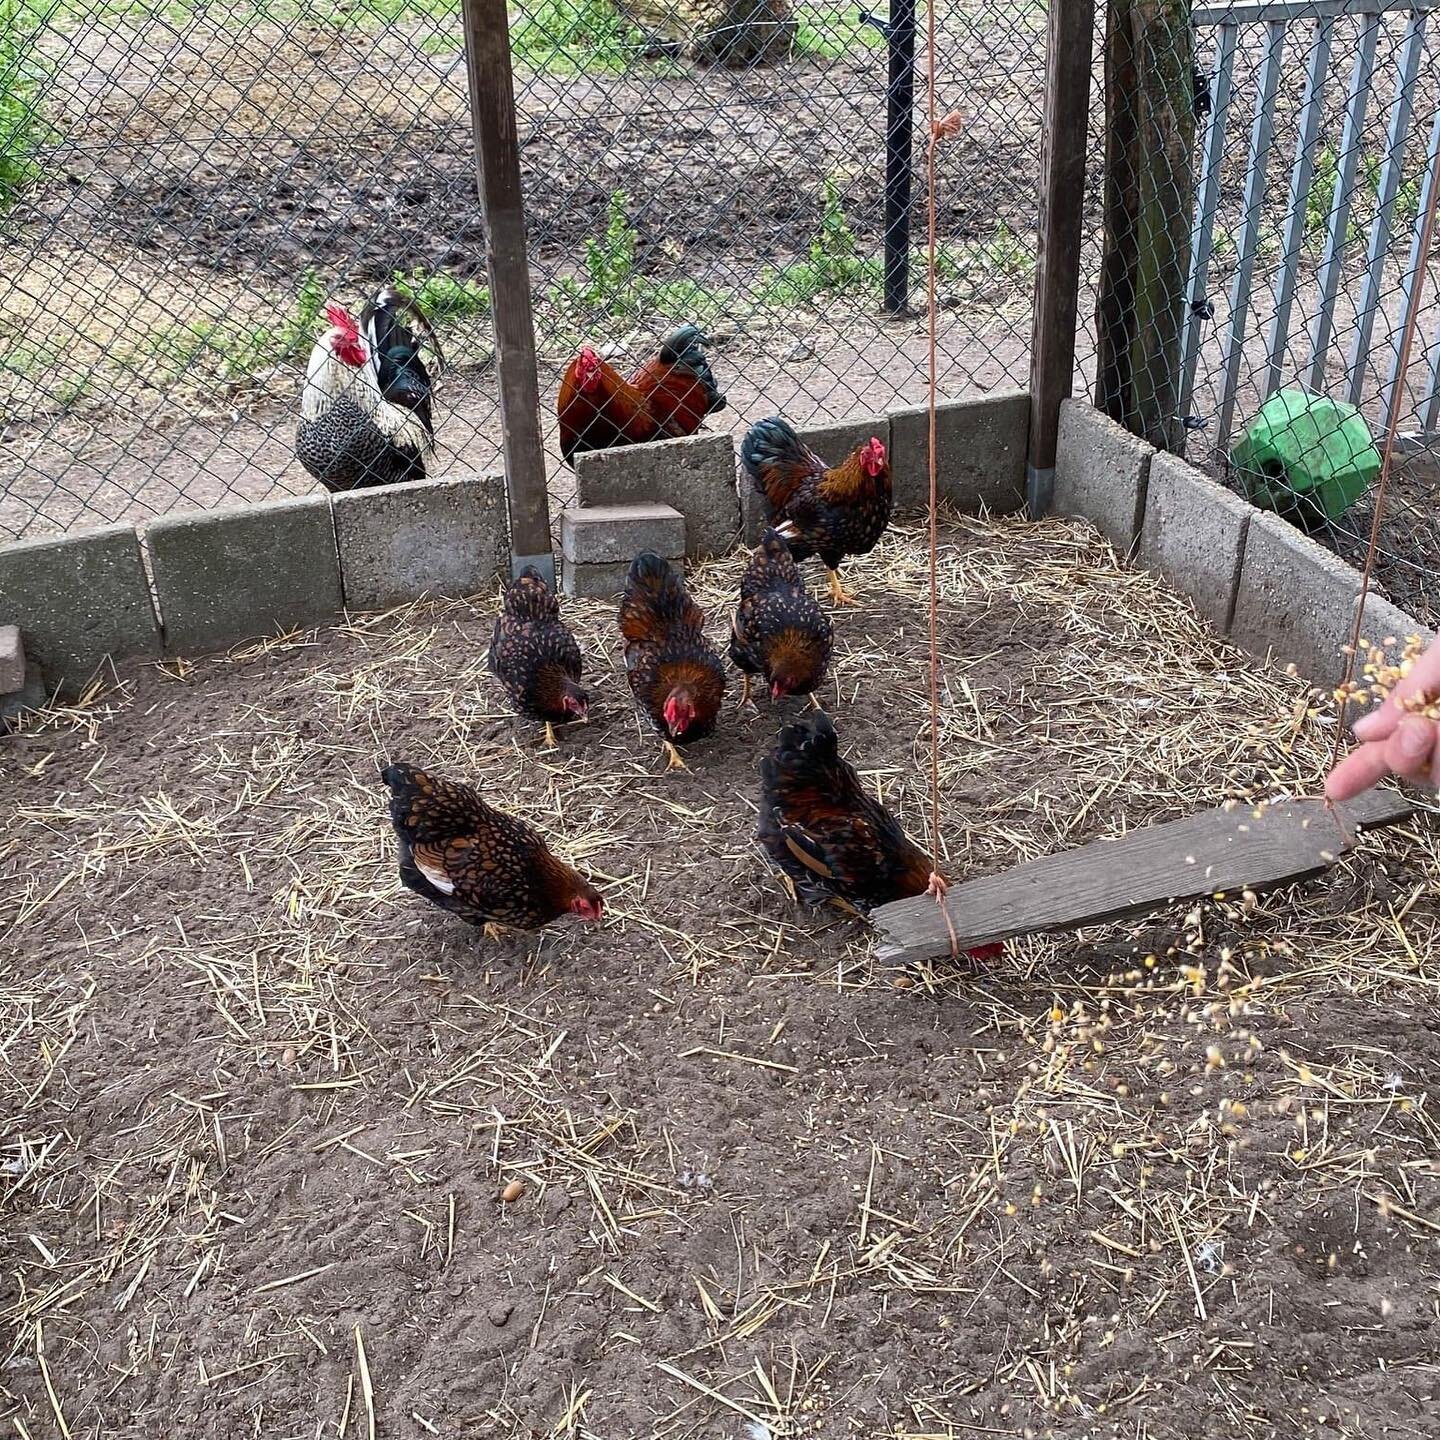 Wist je dat wij bij LinQ ook een boerderij hebben? Dit zijn onze kippen! We hebben twee zijdehoentjes en recent zijn er nog 6 kippen bijgekomen, 3 hanen en 3 hennen. 

Zo kunnen we altijd genieten van heerlijk verse eitjes van de kippen. Wist je dat 